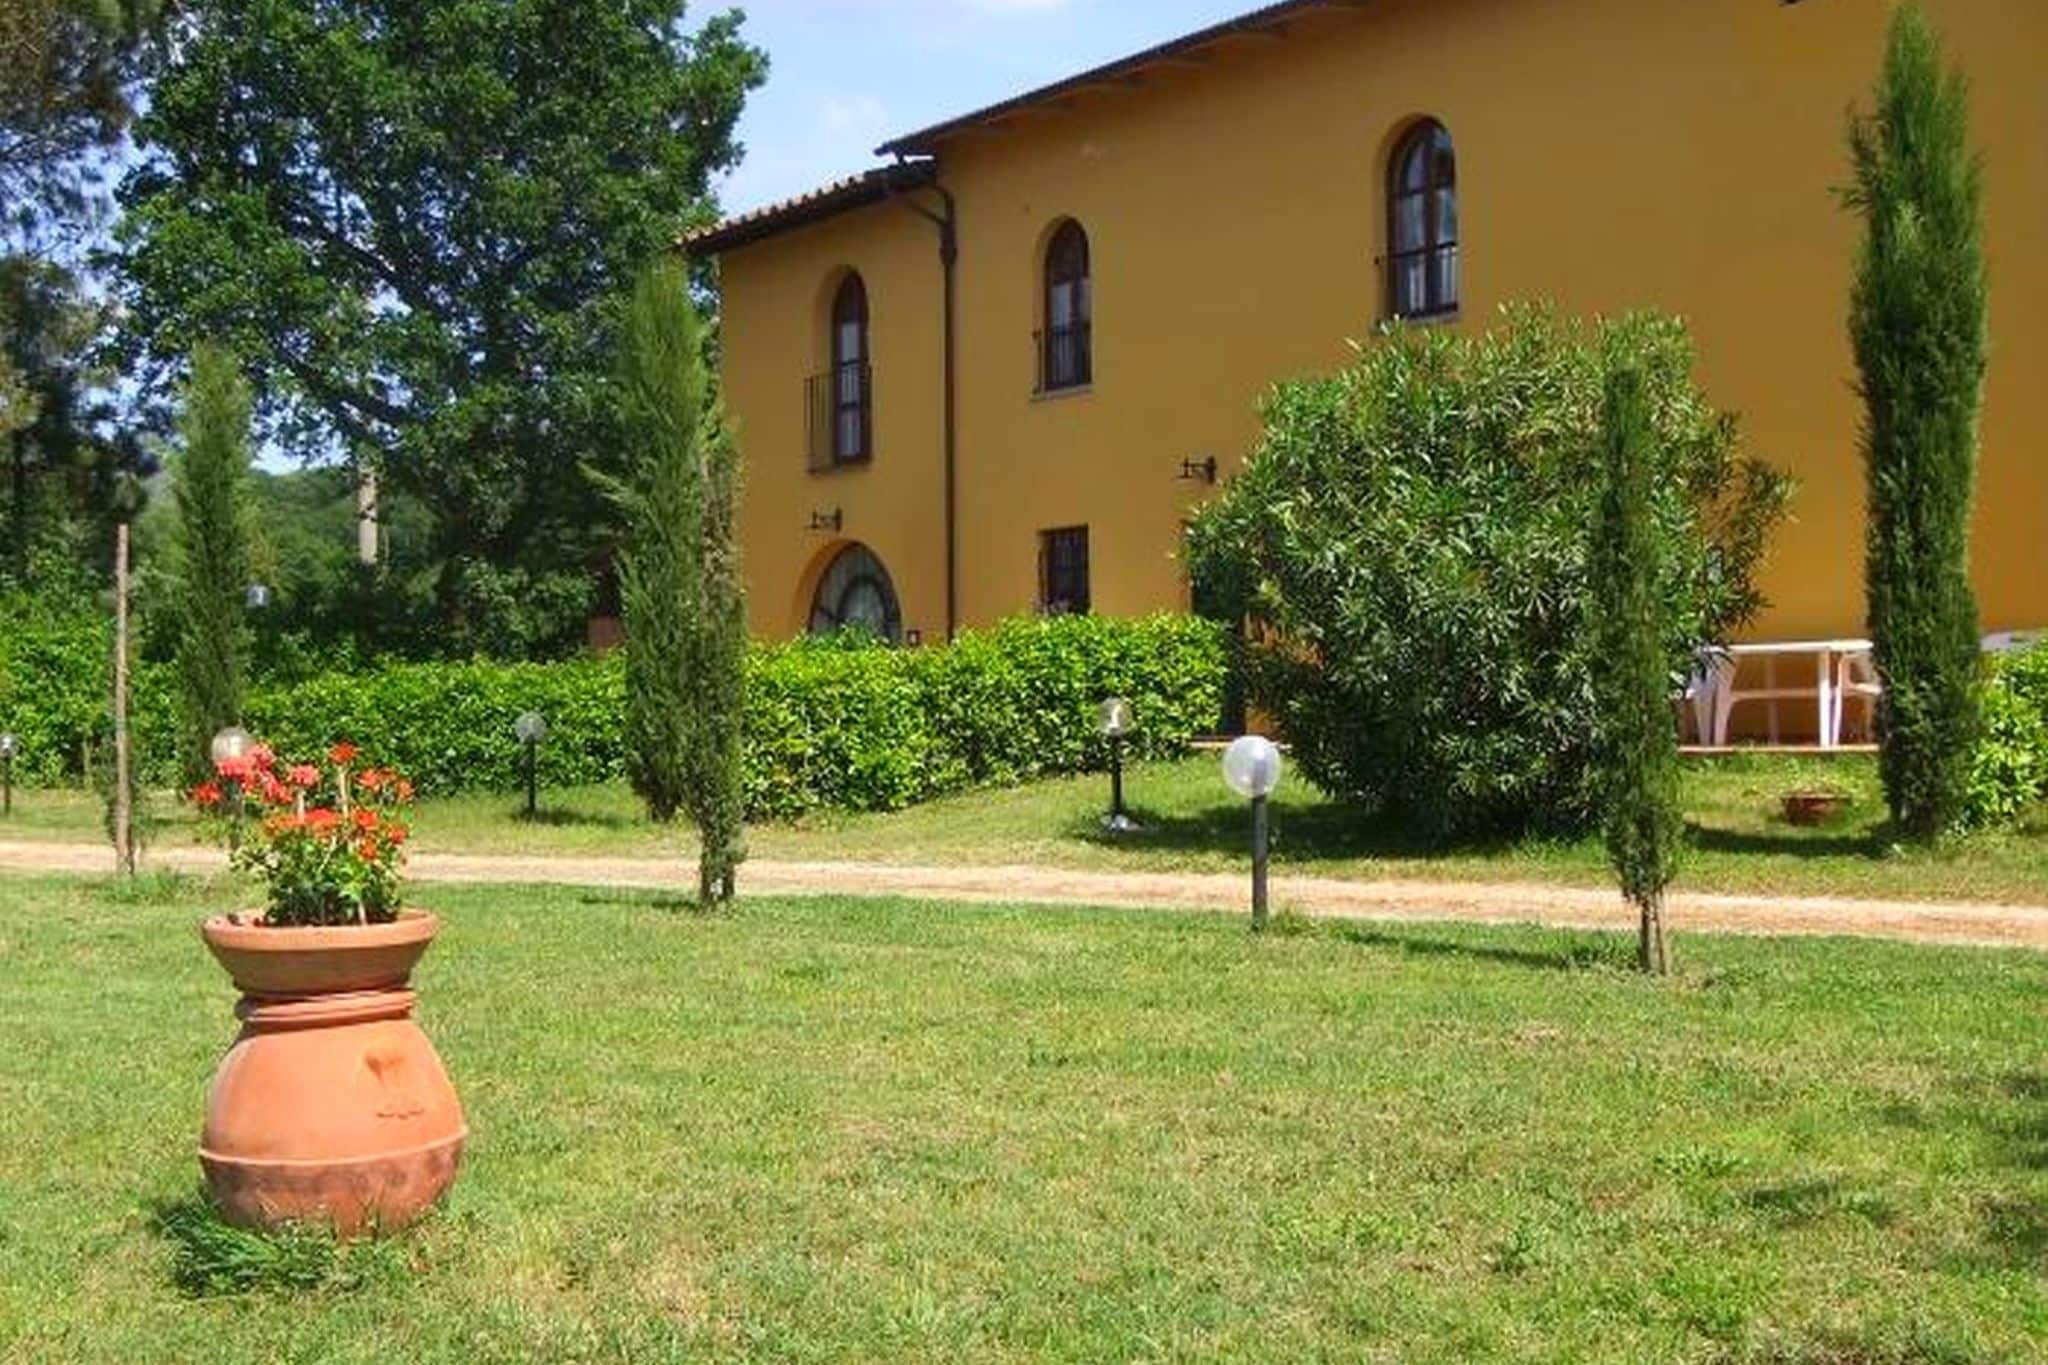 Appartement in een Toscaanse agriturismo met zwembad en tuin